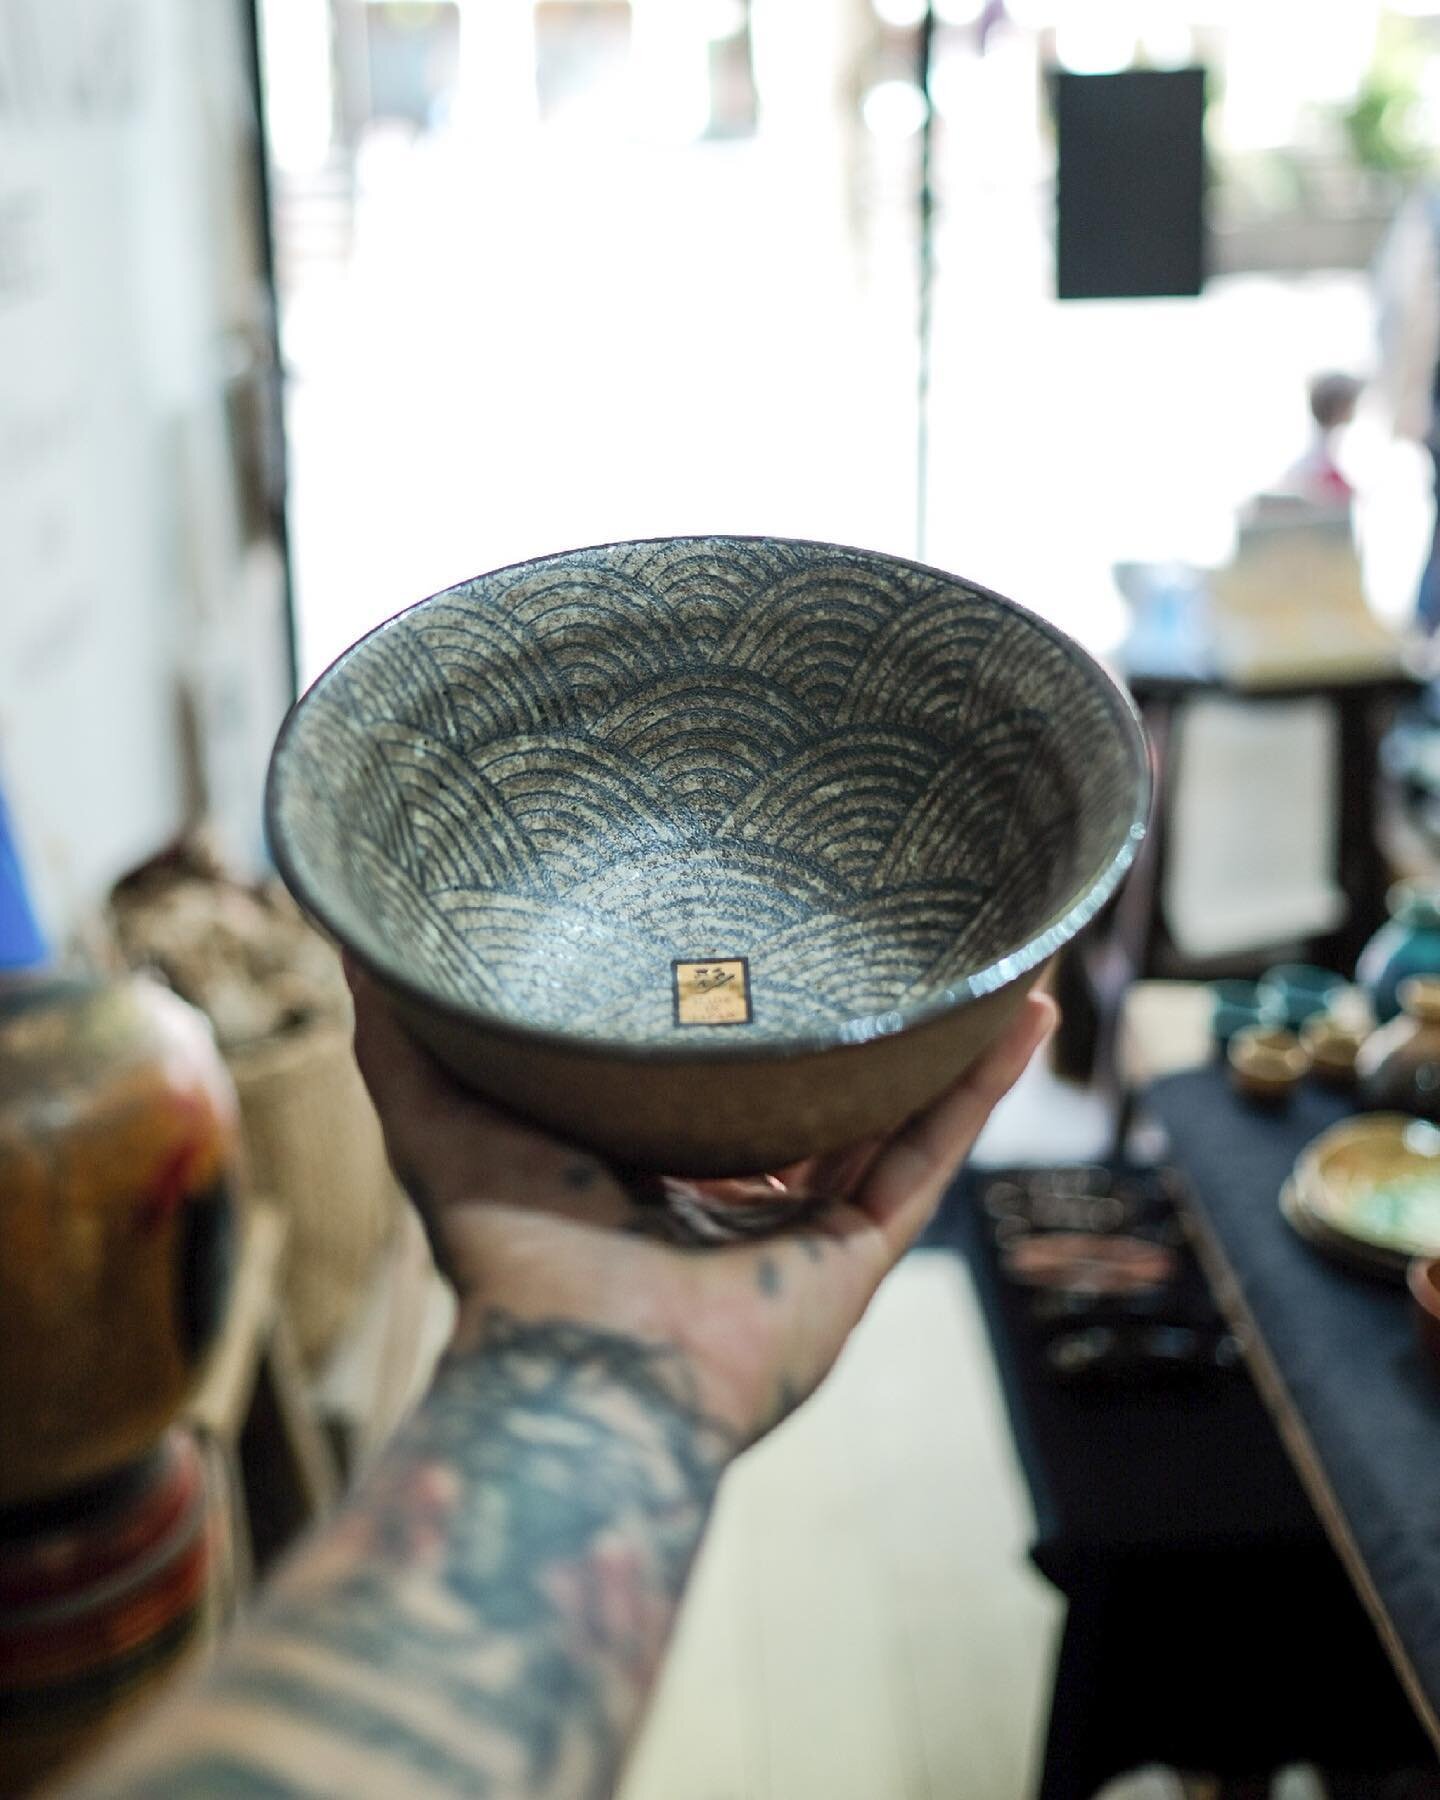 Sopha diffusion est fier de vous proposer ce magnifique bol. Son aspect brut en fait un objet tendance que vous prendrez plaisir &agrave; montrer sur votre table.
.
#design #supplier #japanese #factory #B2B #artisanat #craft #pattern #professional #i